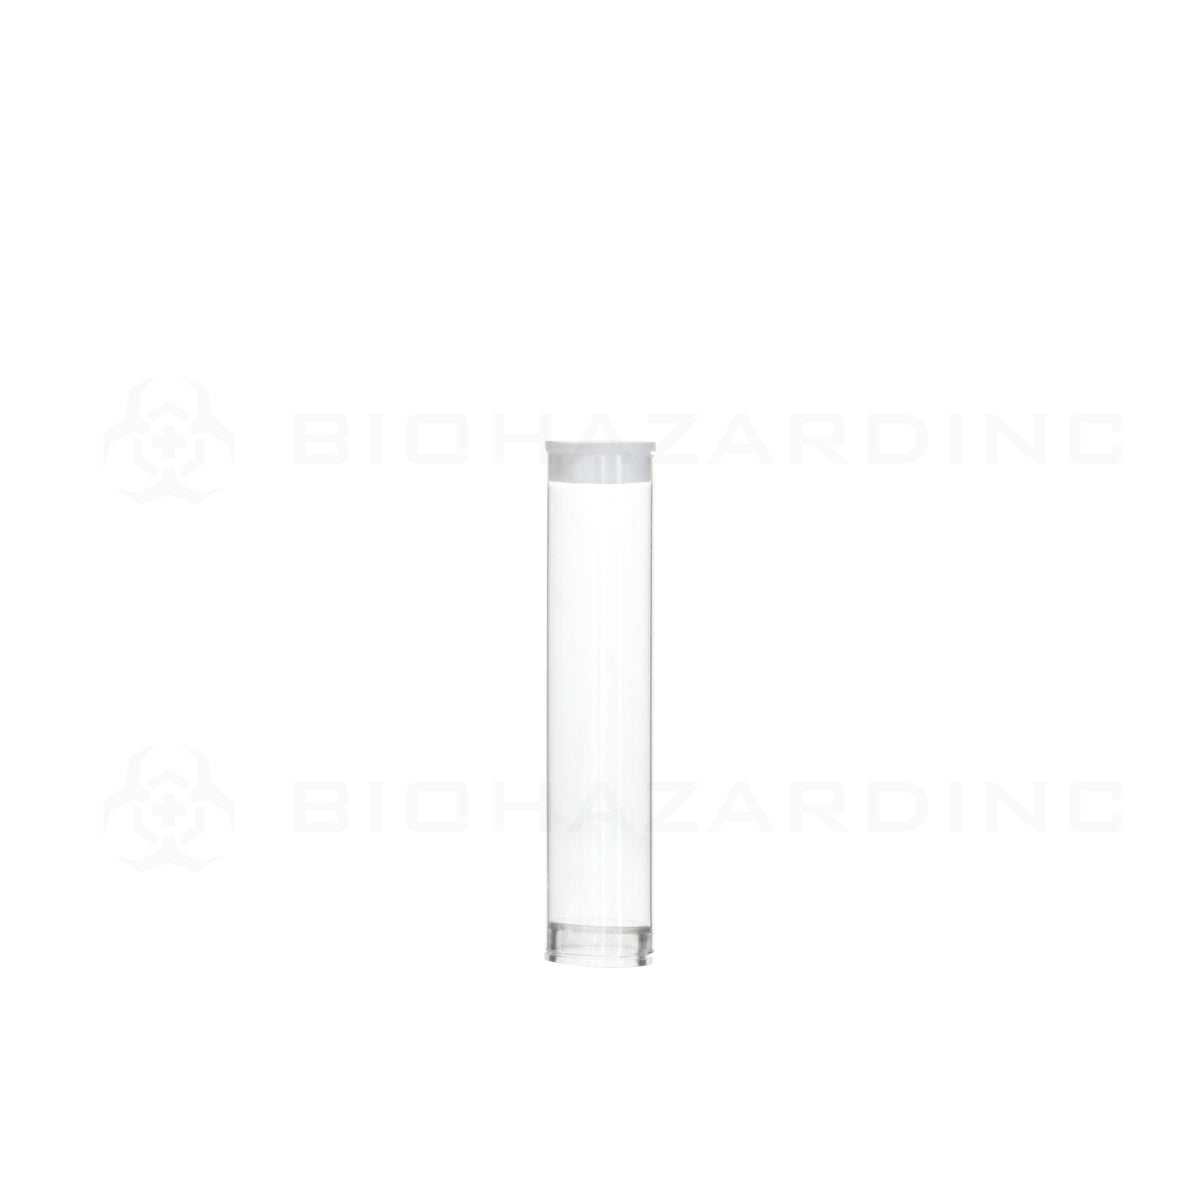 Cartridge Tube | Clear Vape Cartridge Tube w/ White Cap | .5mL - 500 Count Storage Tube Biohazard Inc   